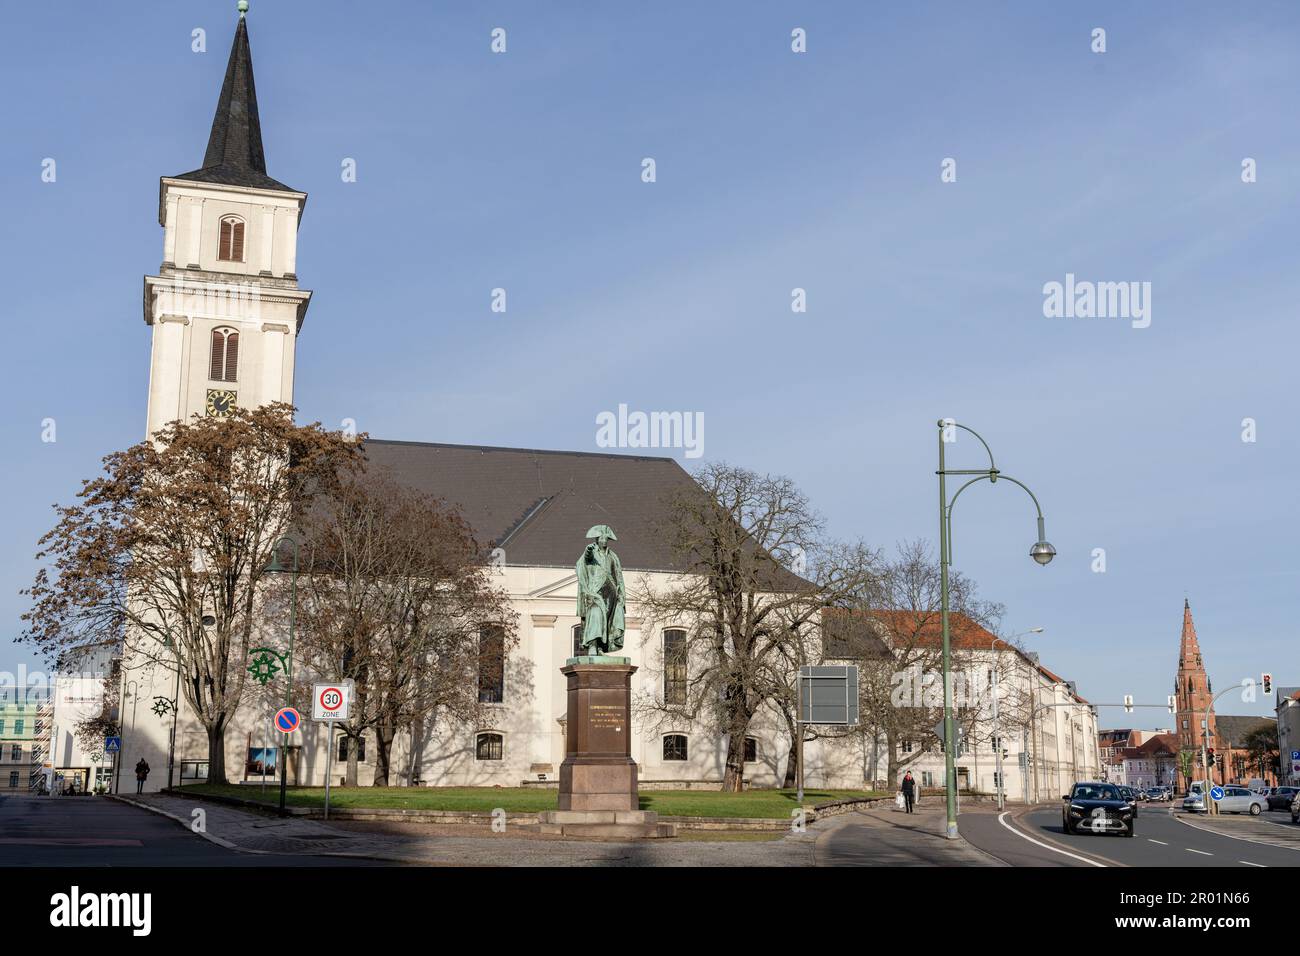 St John Church, Dessau, Repubblica federale di Germania. Foto Stock